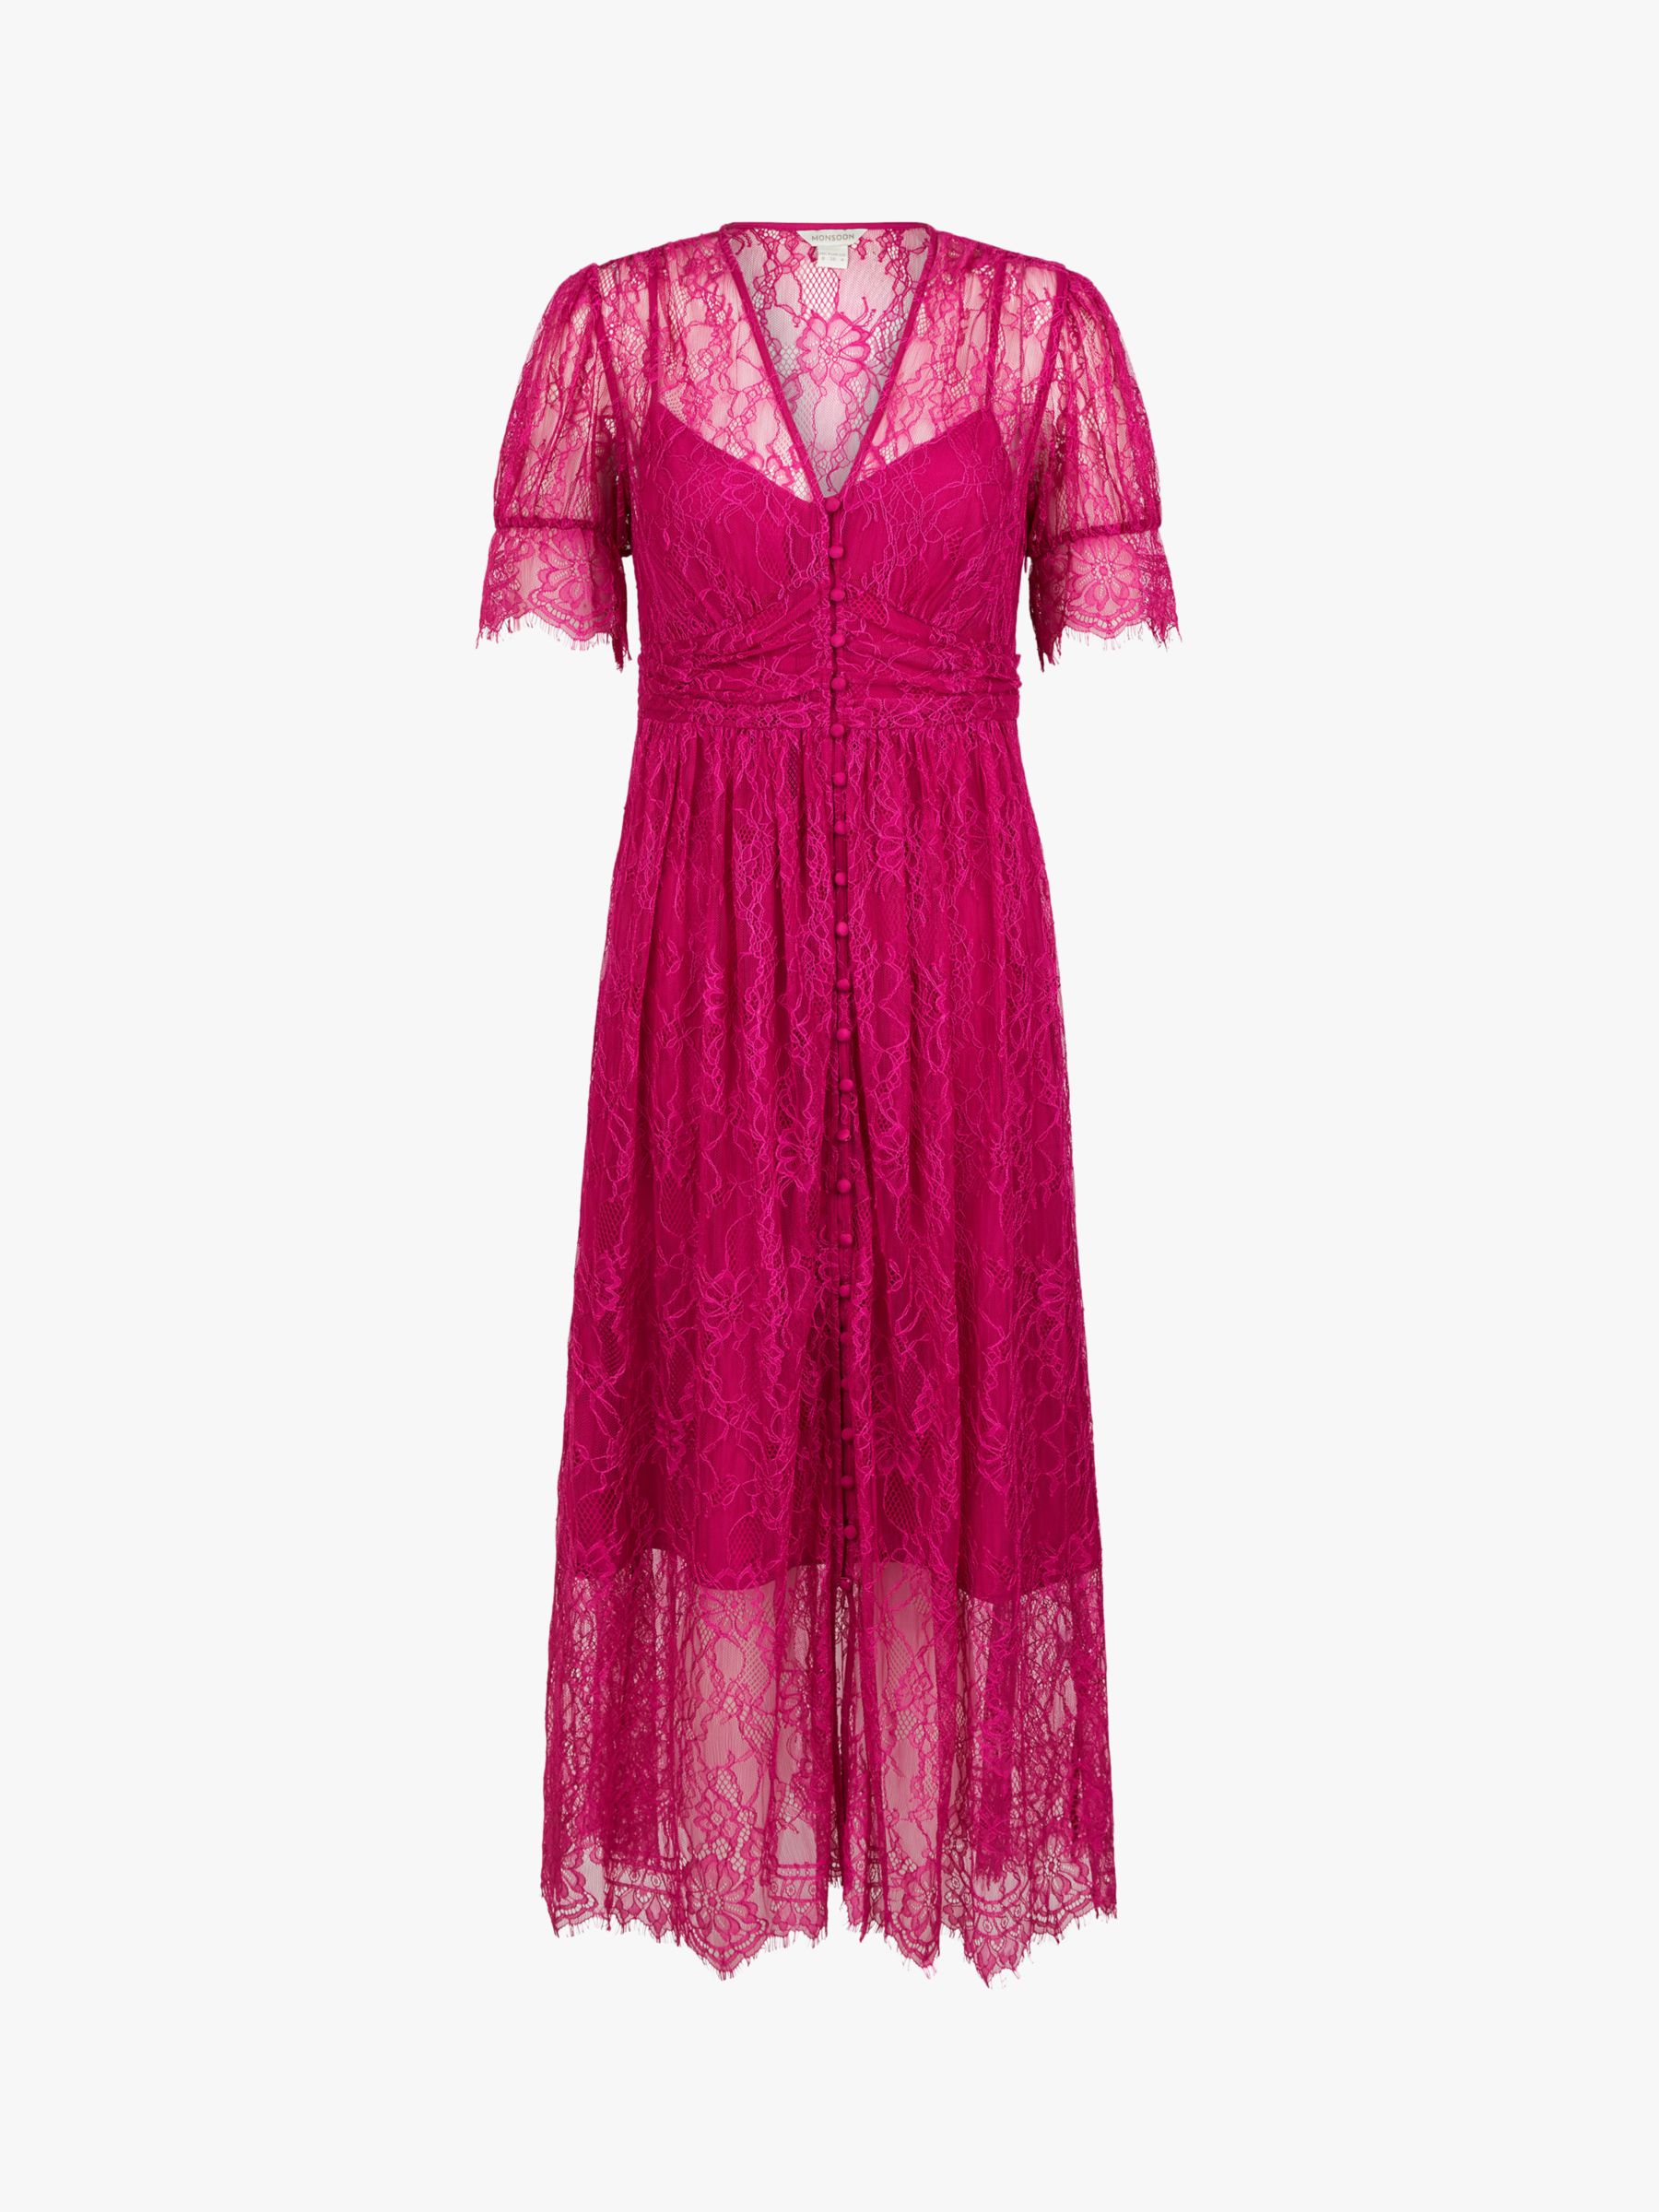 monsoon pink lace dress